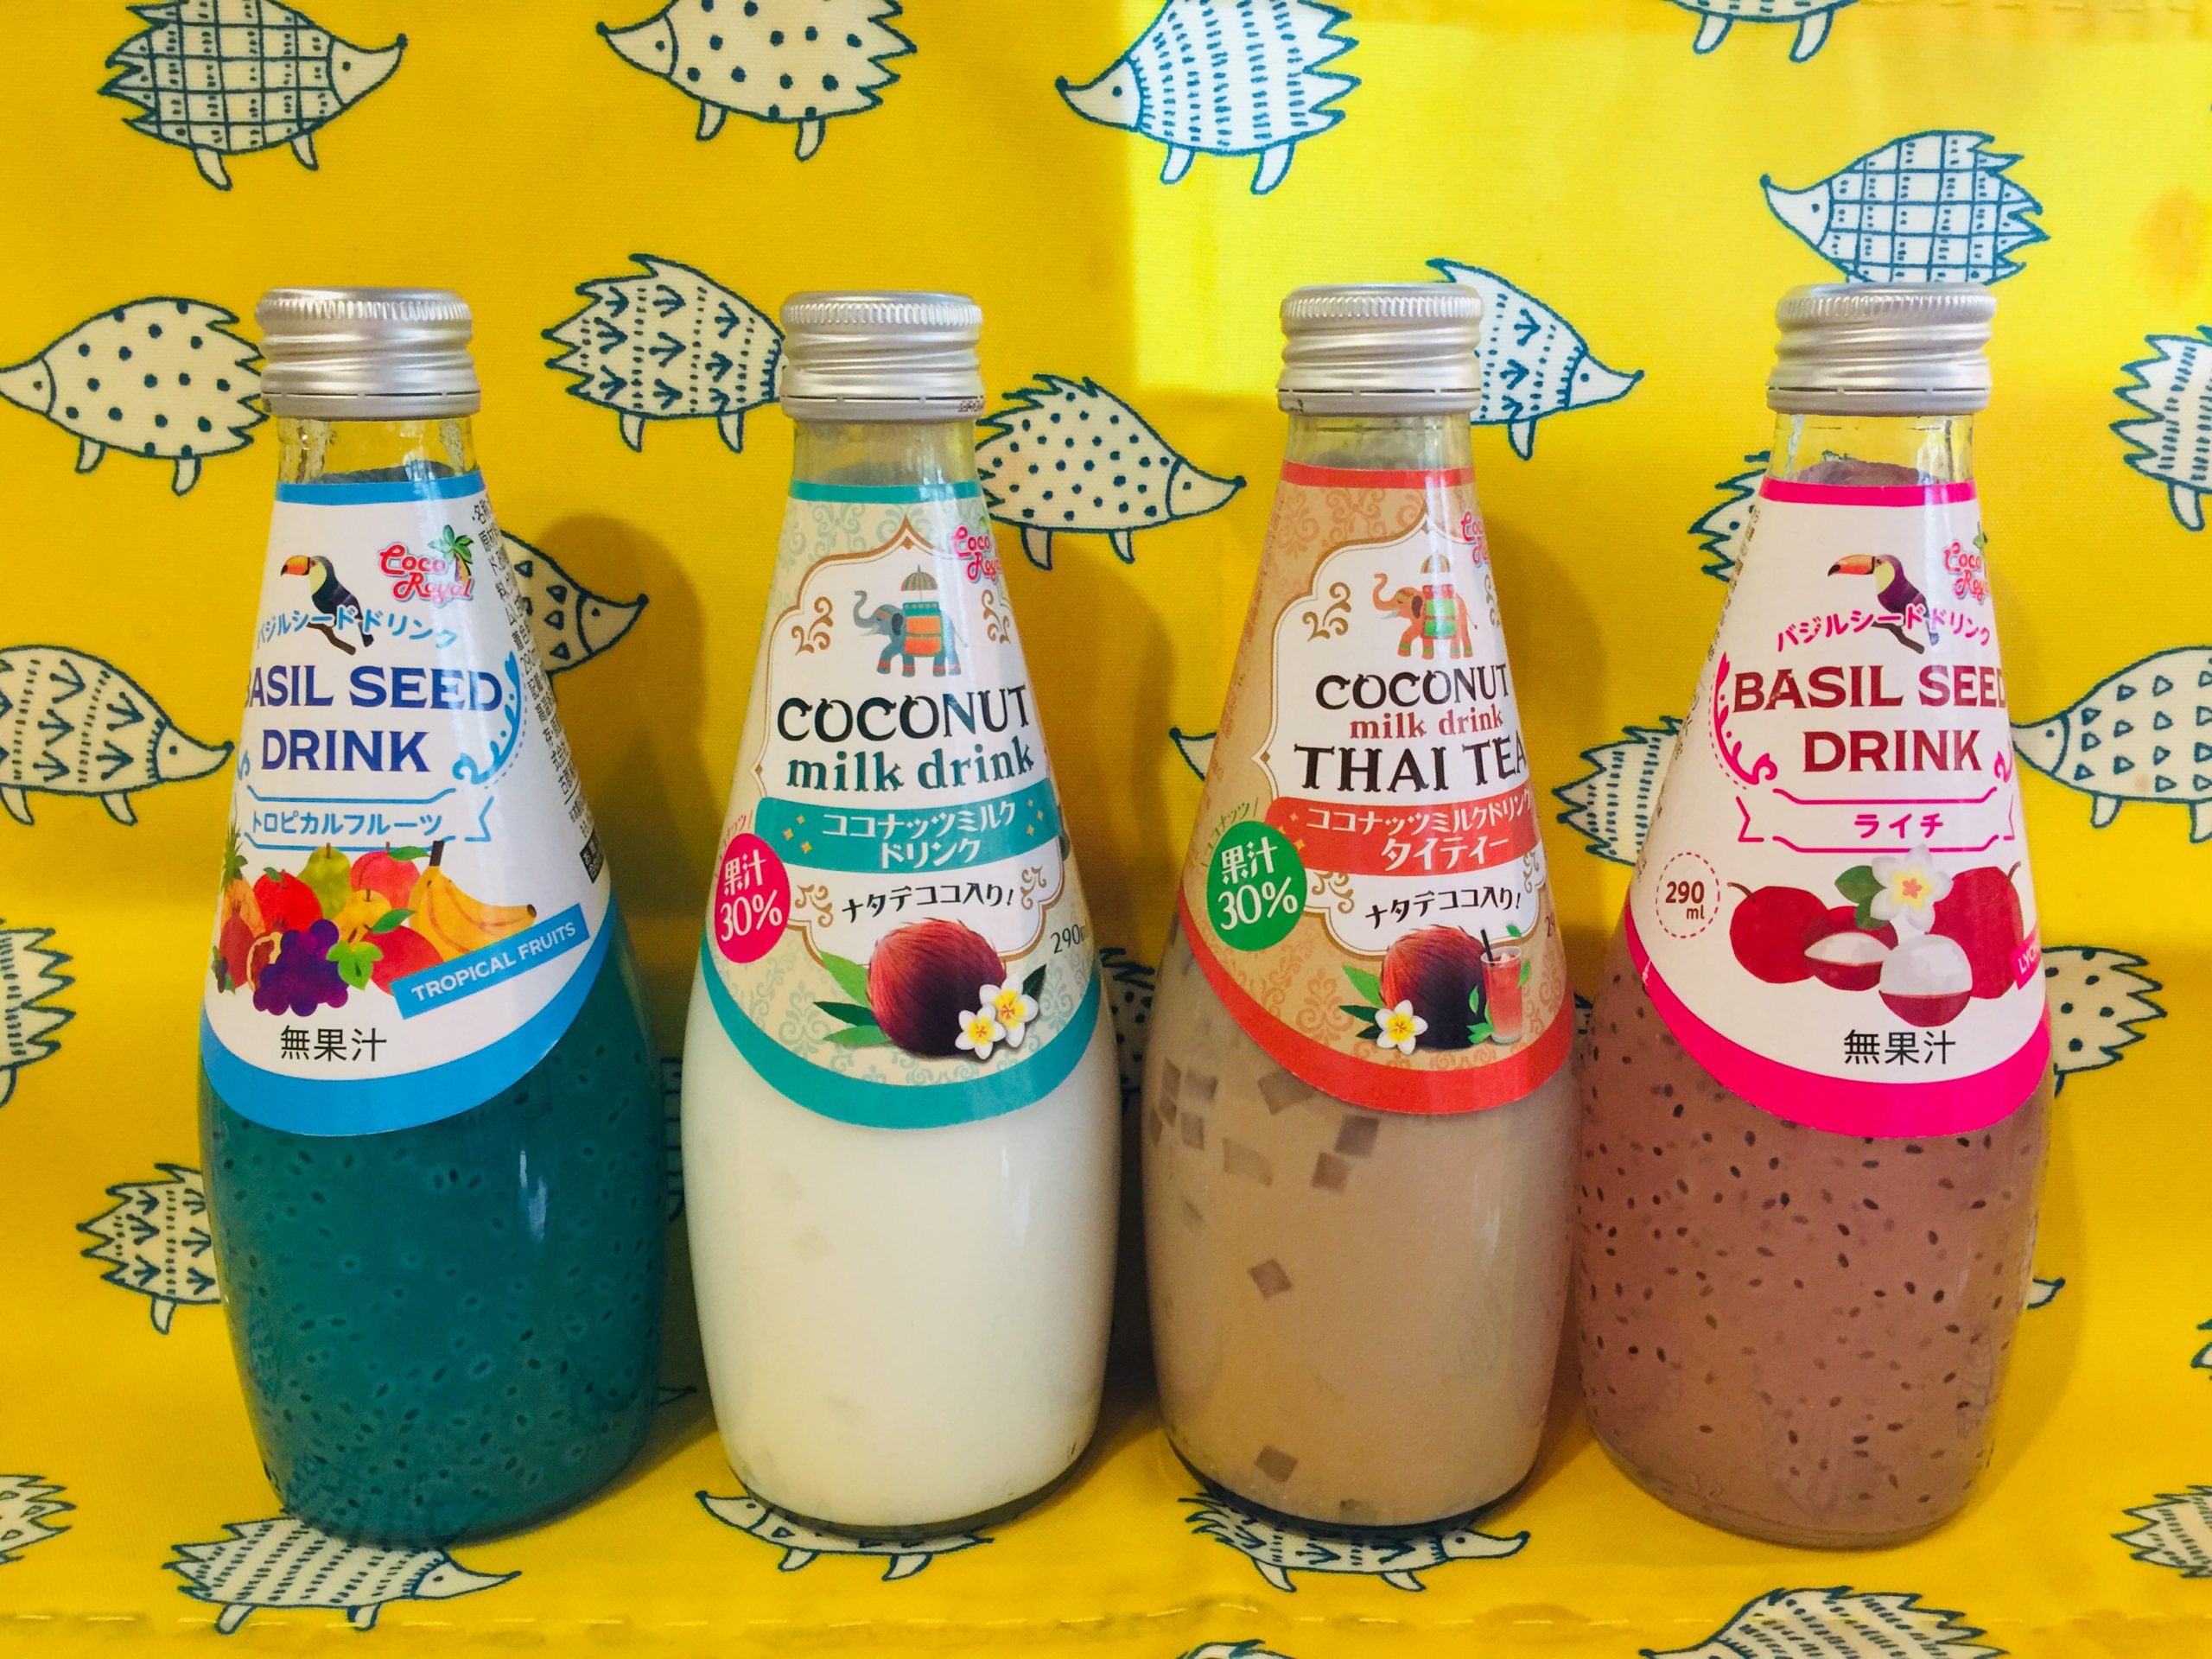 ココナッツタイティー ココナッツミルク トロピカルフルーツ ライチのドリンク タイ産 業務スーパーの商品をレポートするブログ